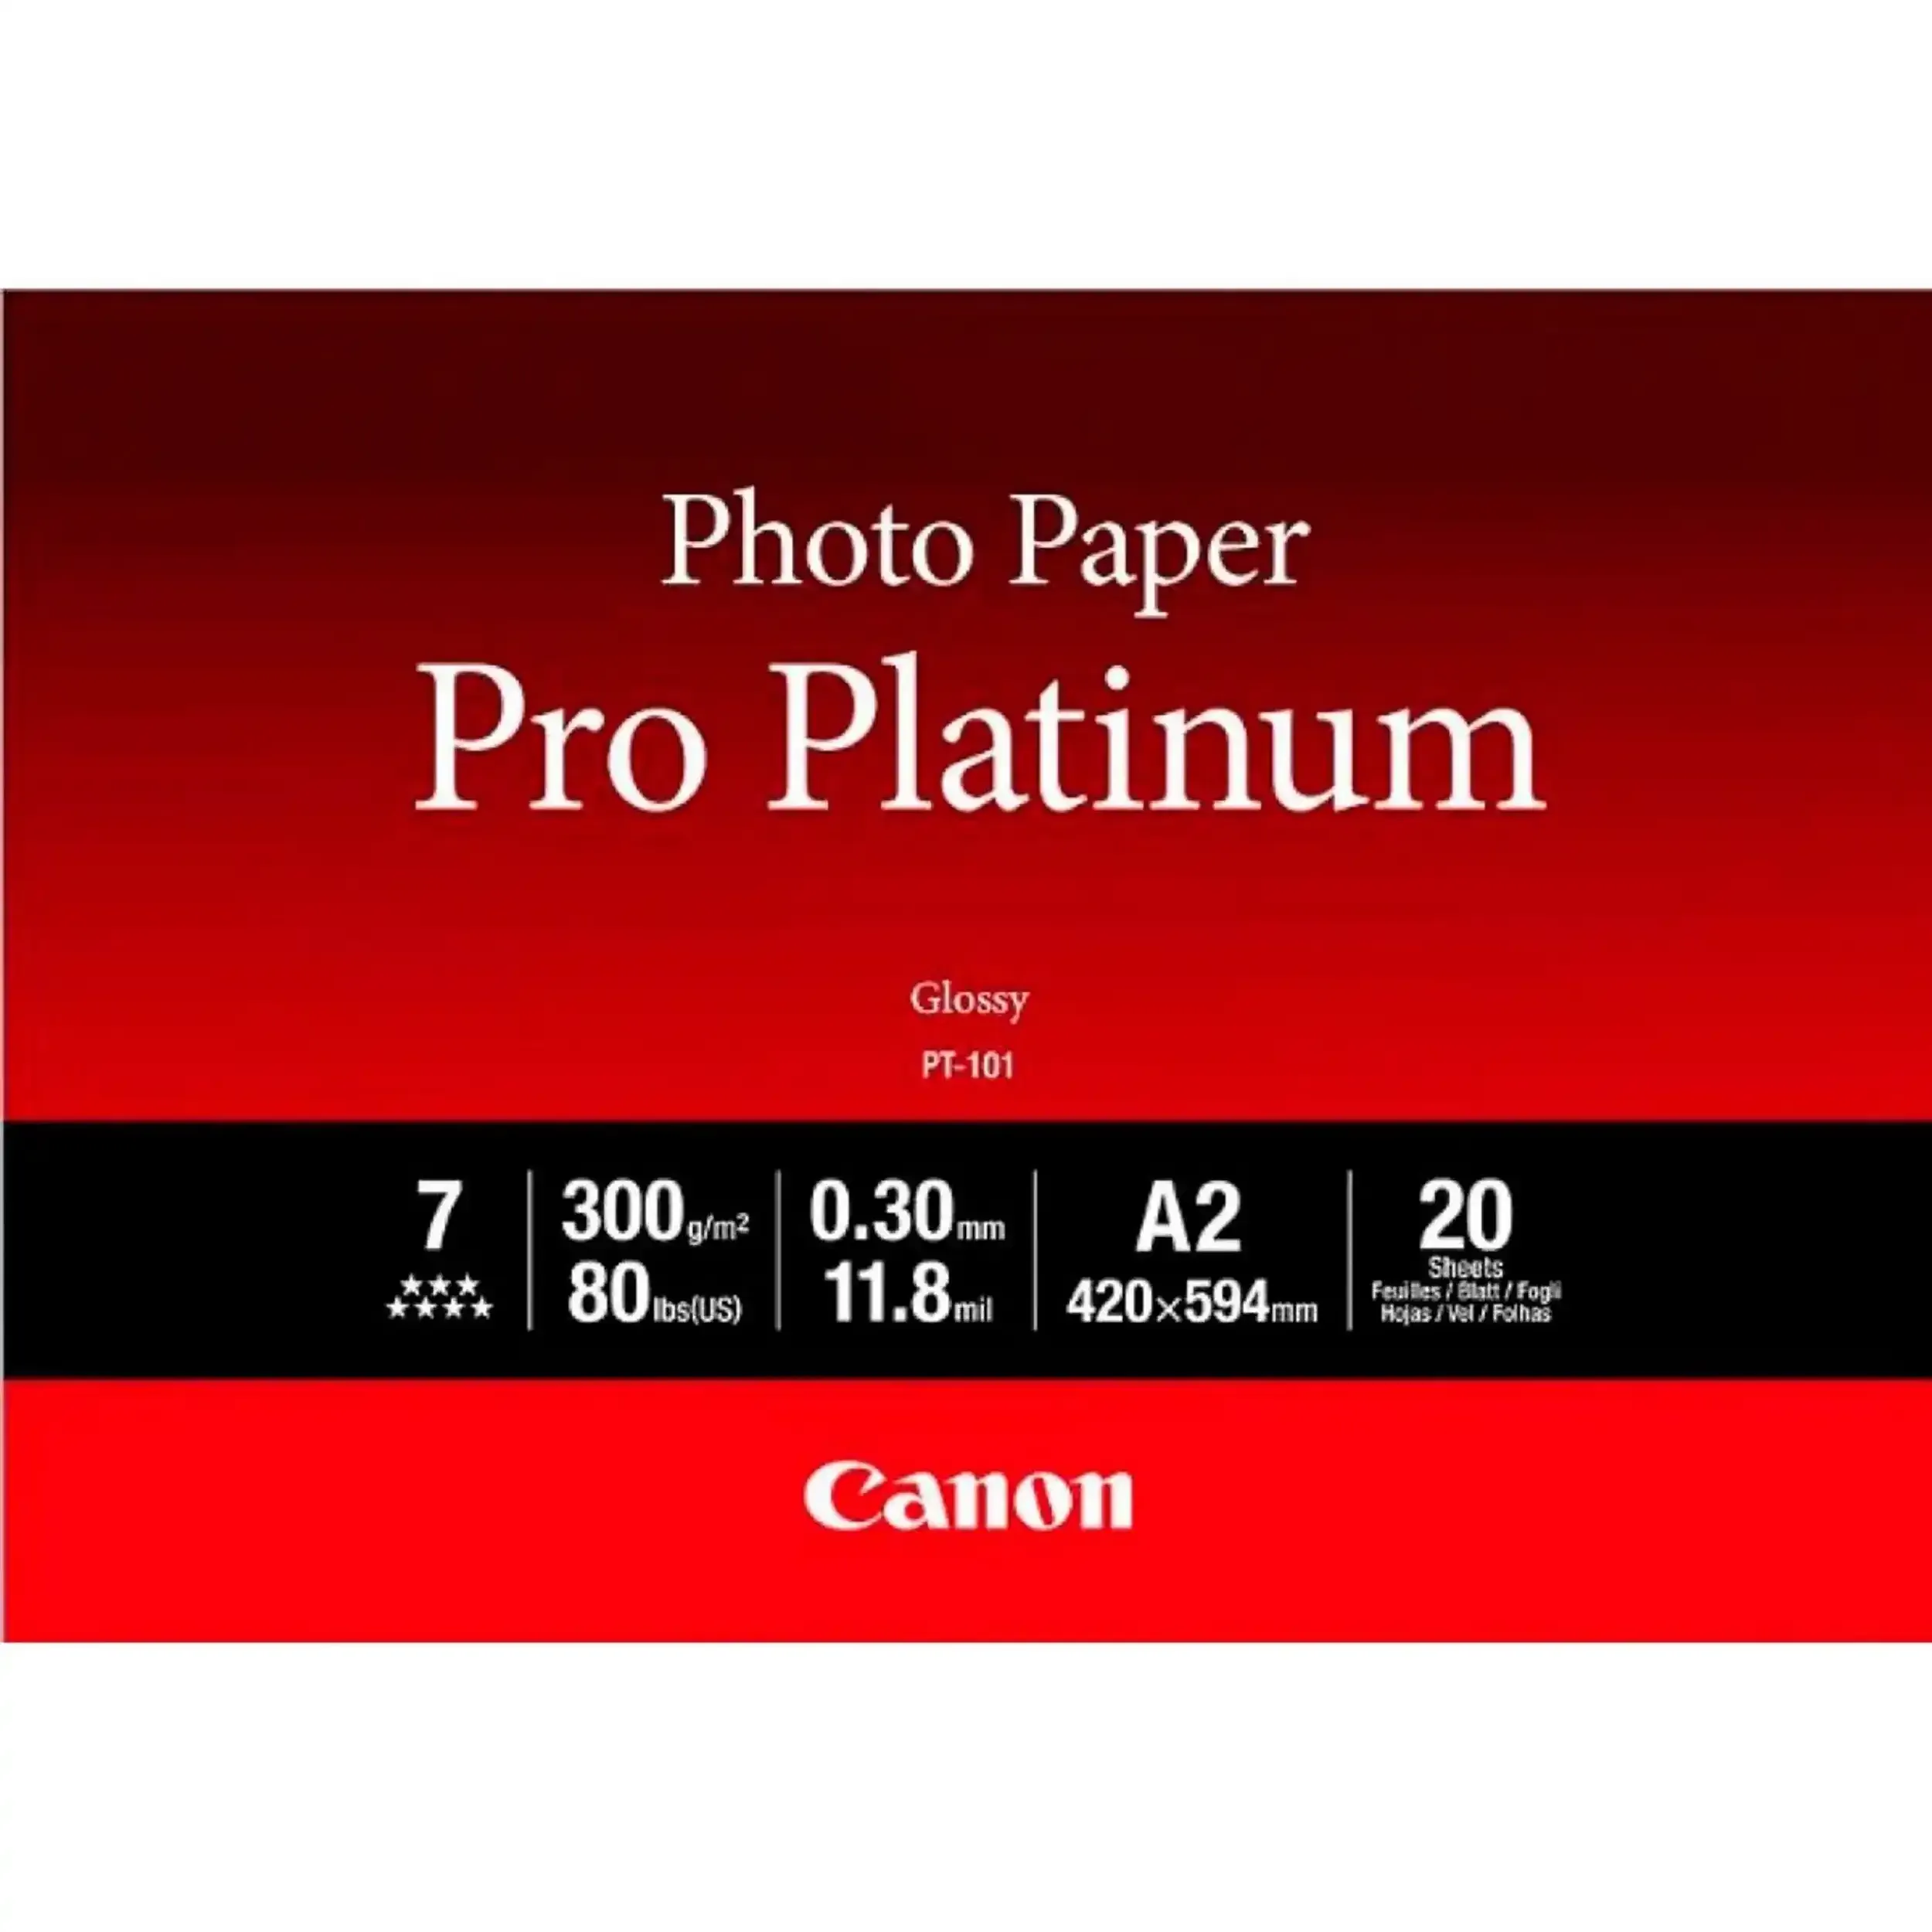 Canon PT-101 A2 Photo Paper Pro Platinum